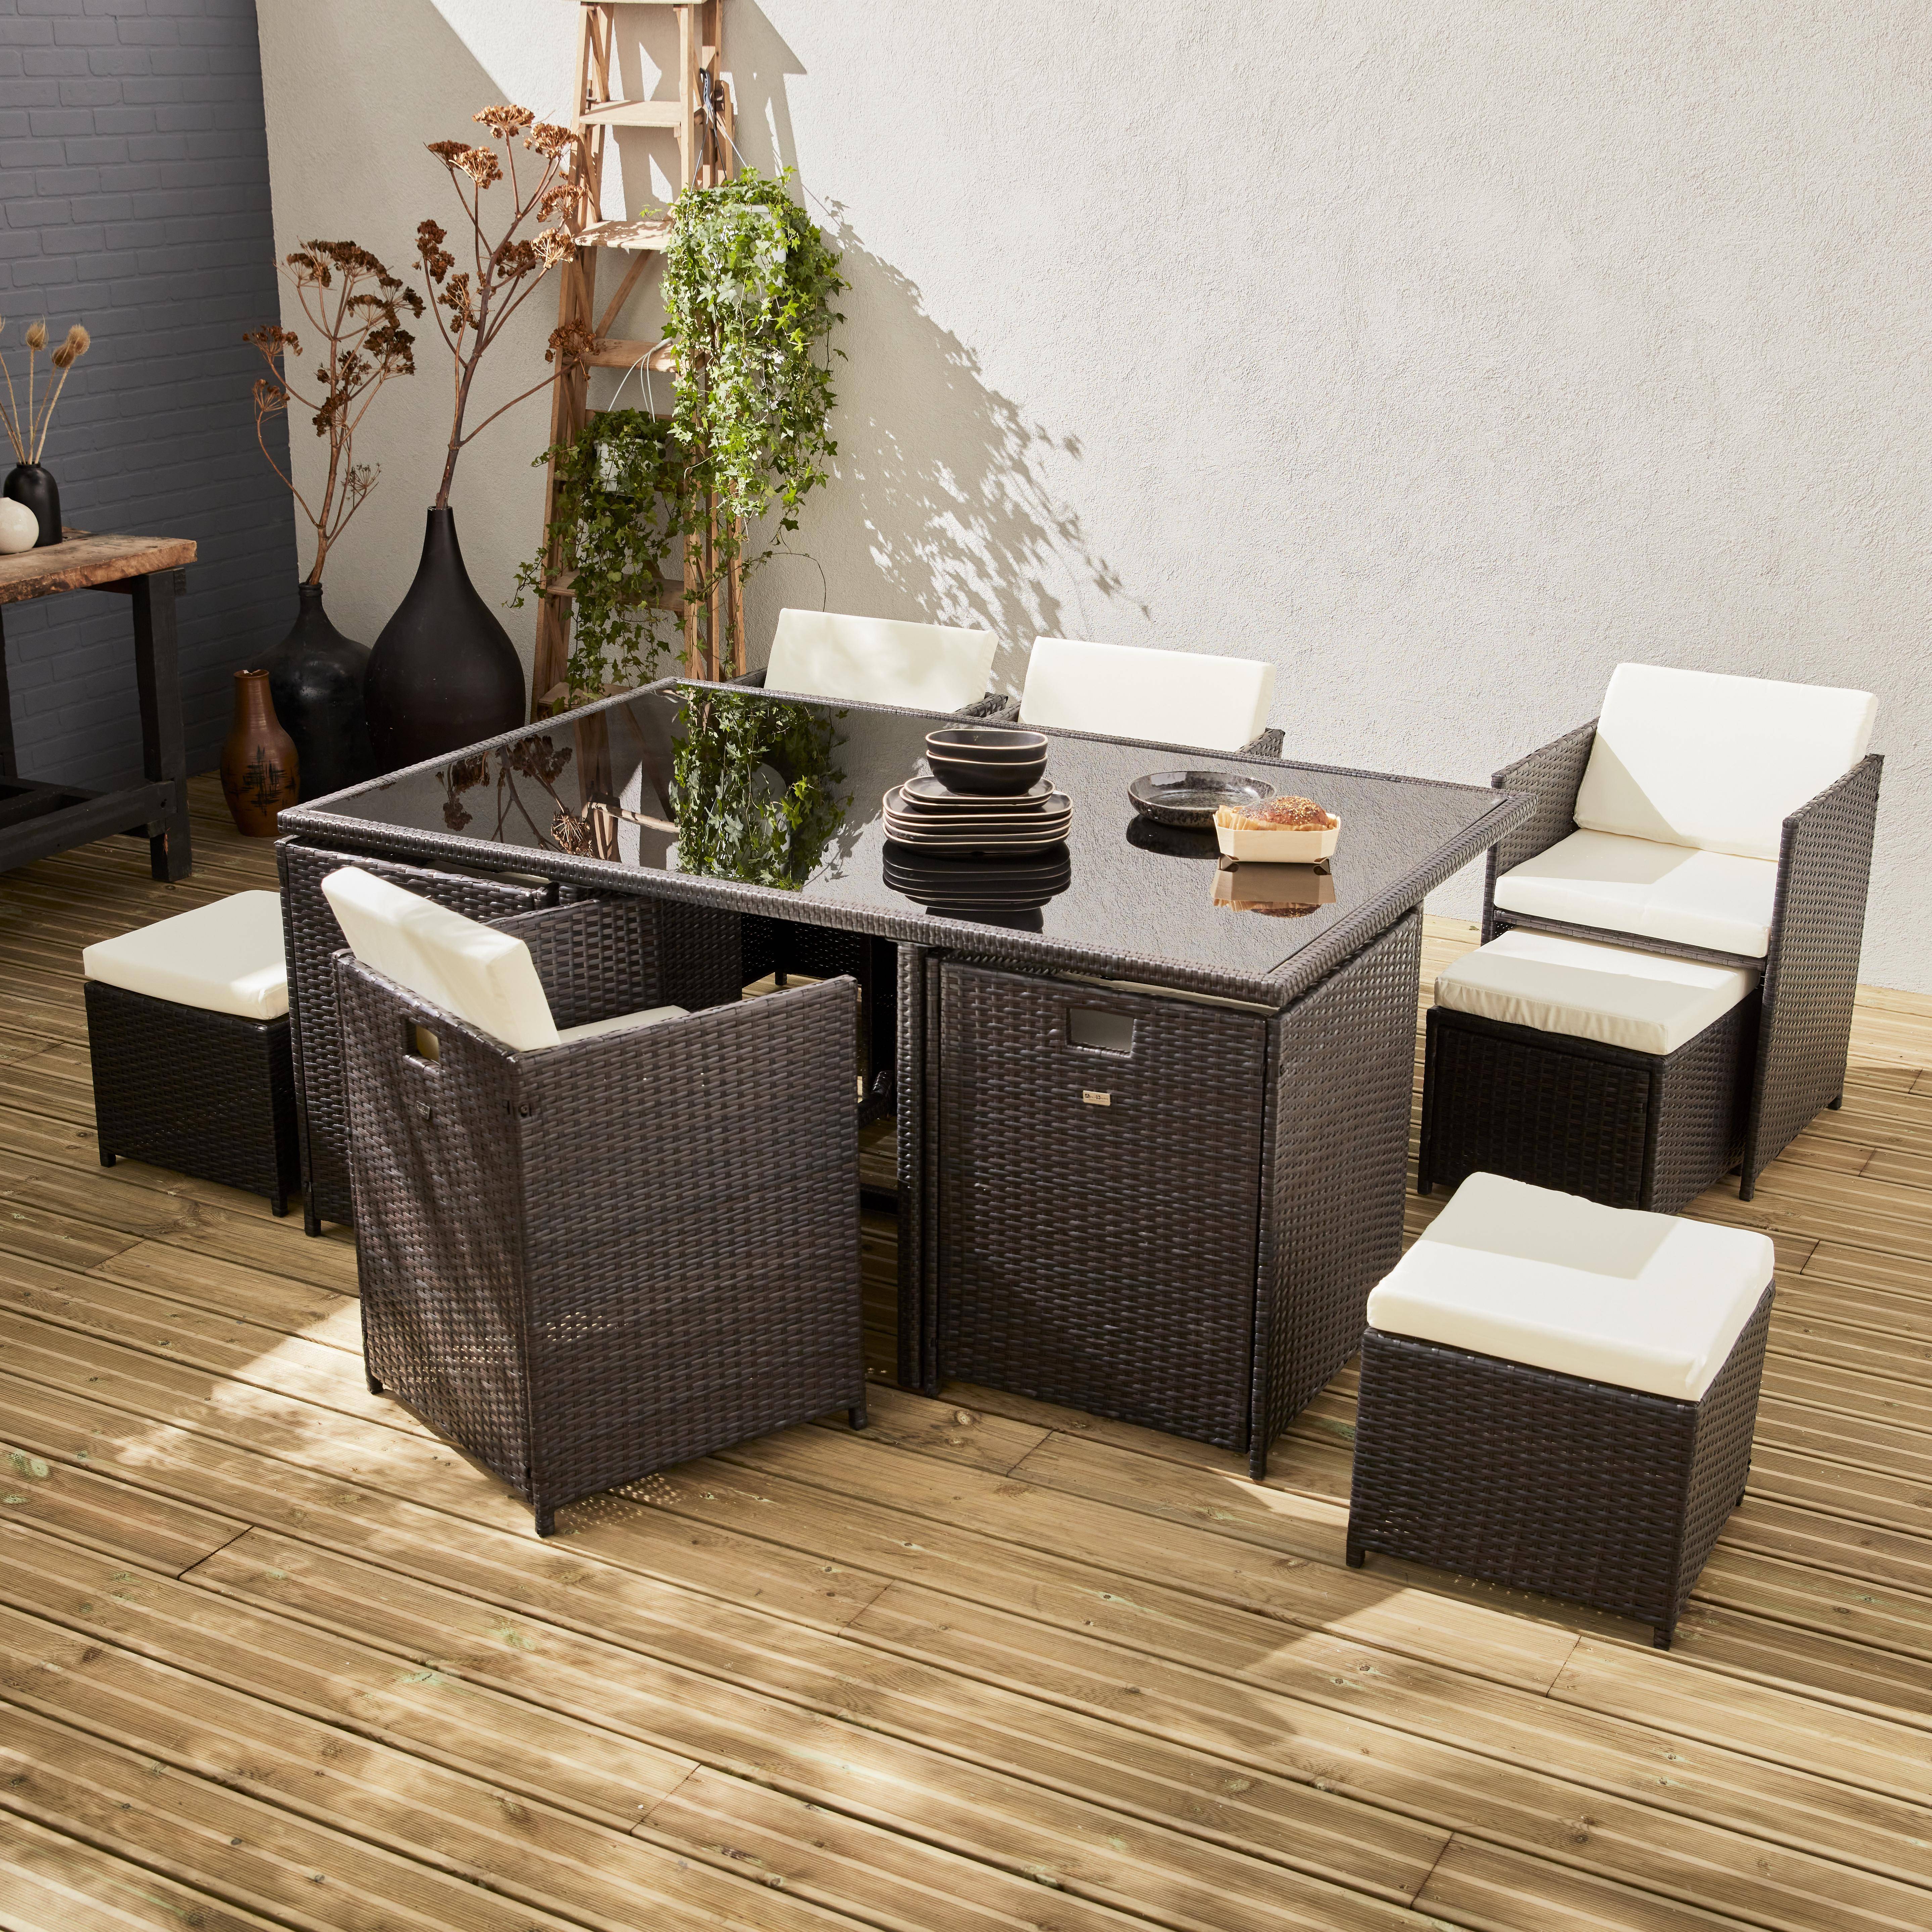 Conjunto de muebles de jardín 6-10 plazas - Vabo- Color marrón, cojines color crudo, mesa incorporada. Photo1